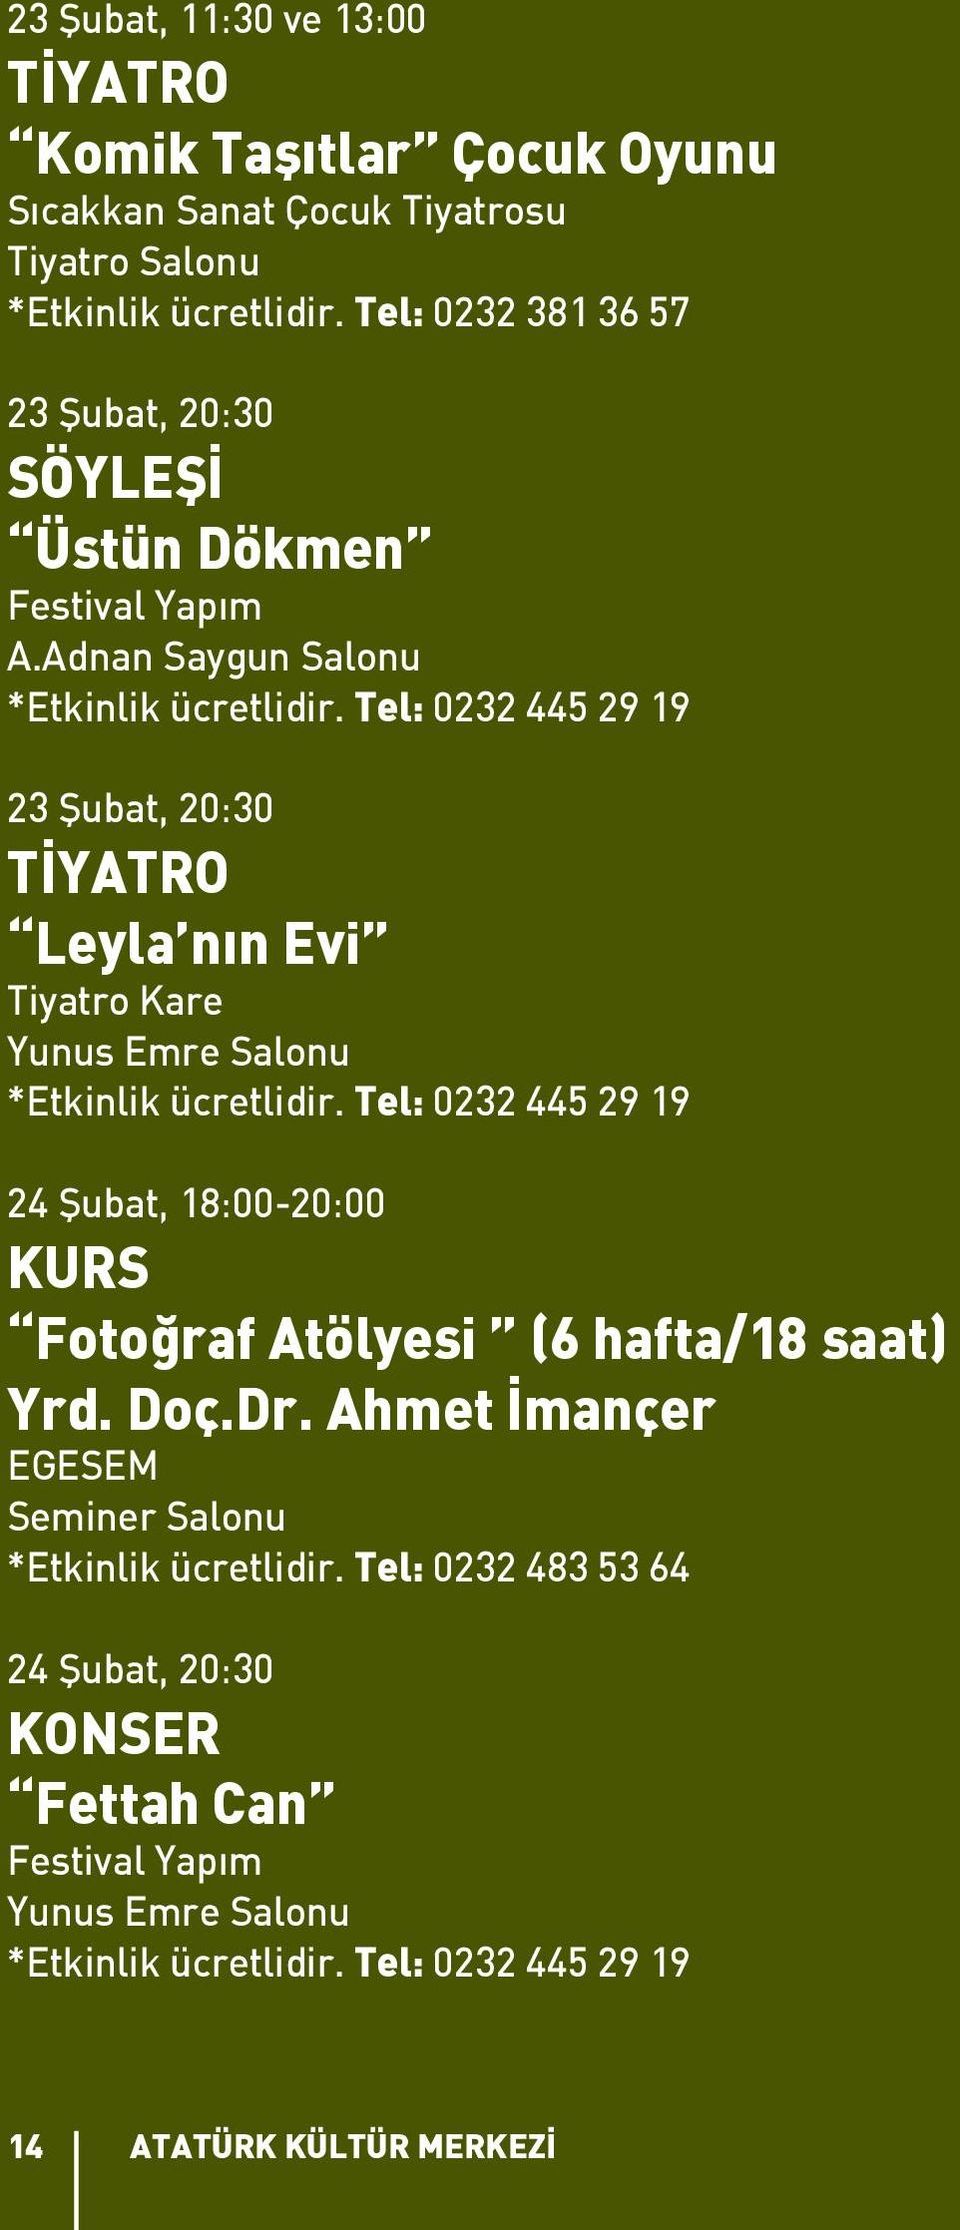 Tel: 0232 445 29 19 23 Şubat, 20:30 TİYATRO Leyla nın Evi Tiyatro Kare Yunus Emre Salonu *Etkinlik ücretlidir.